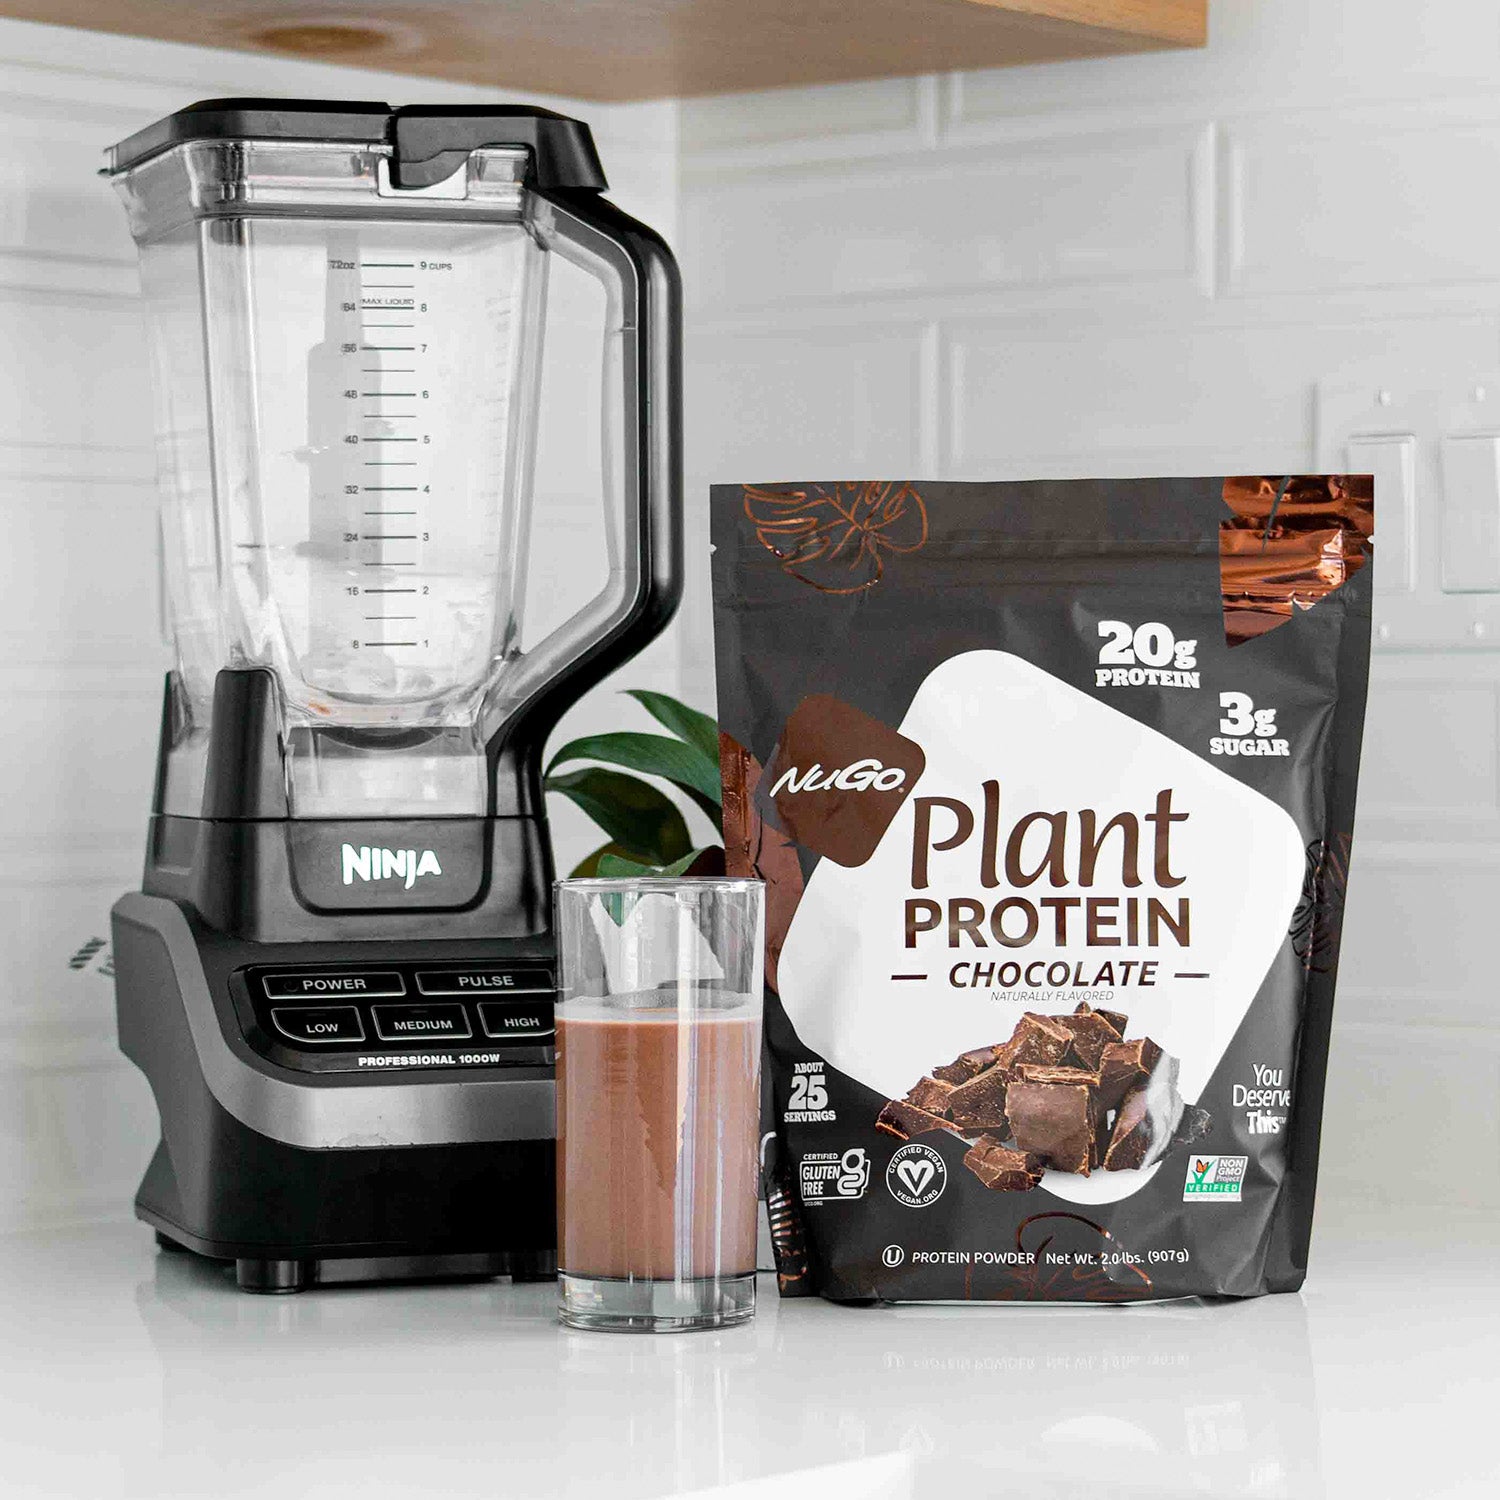 Chocolate Protein Powder next to Blender